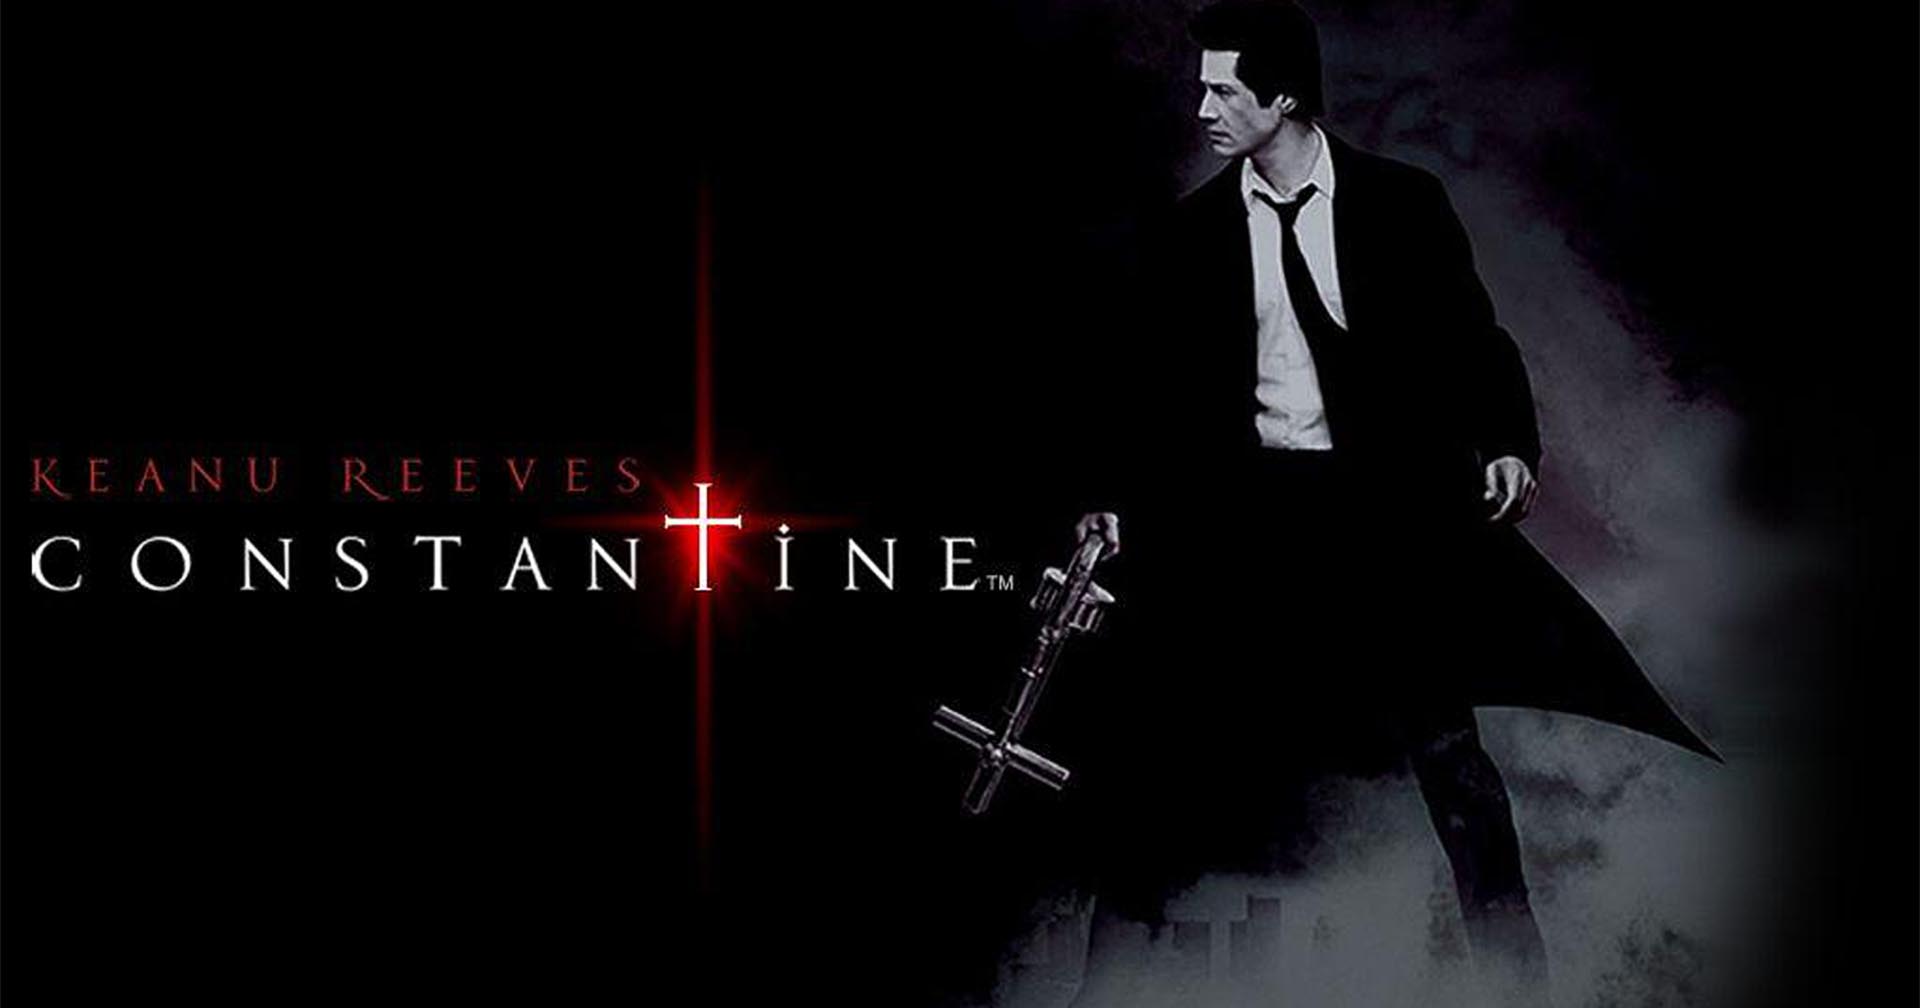 4 เหตุผลที่ส่งให้ Constantine กลายเป็นหนังคัลต์ที่แฟน ๆ เฝ้ารอภาคต่อมานานถึง 17 ปี